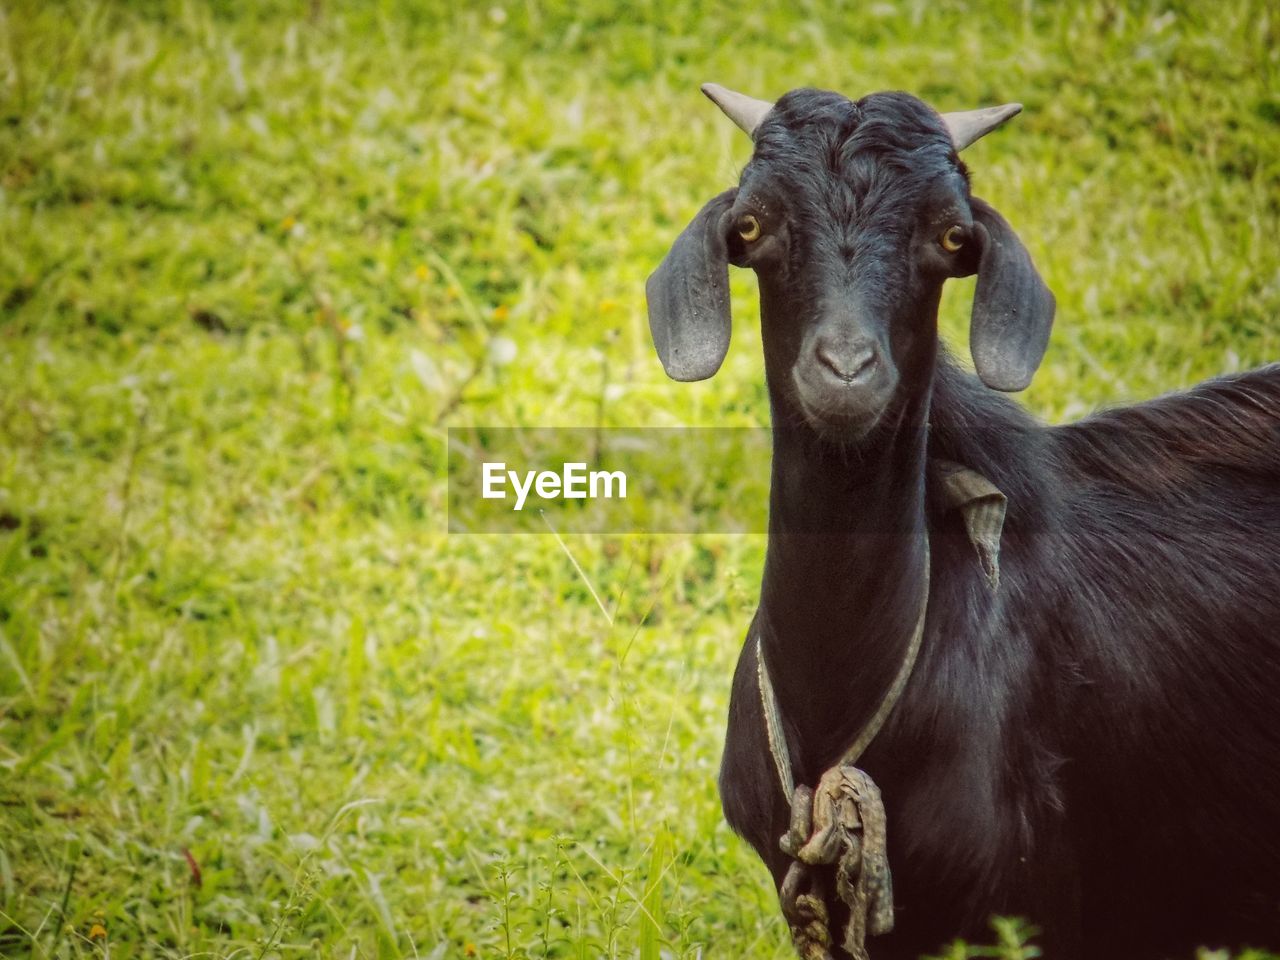 Portrait of a goat on field